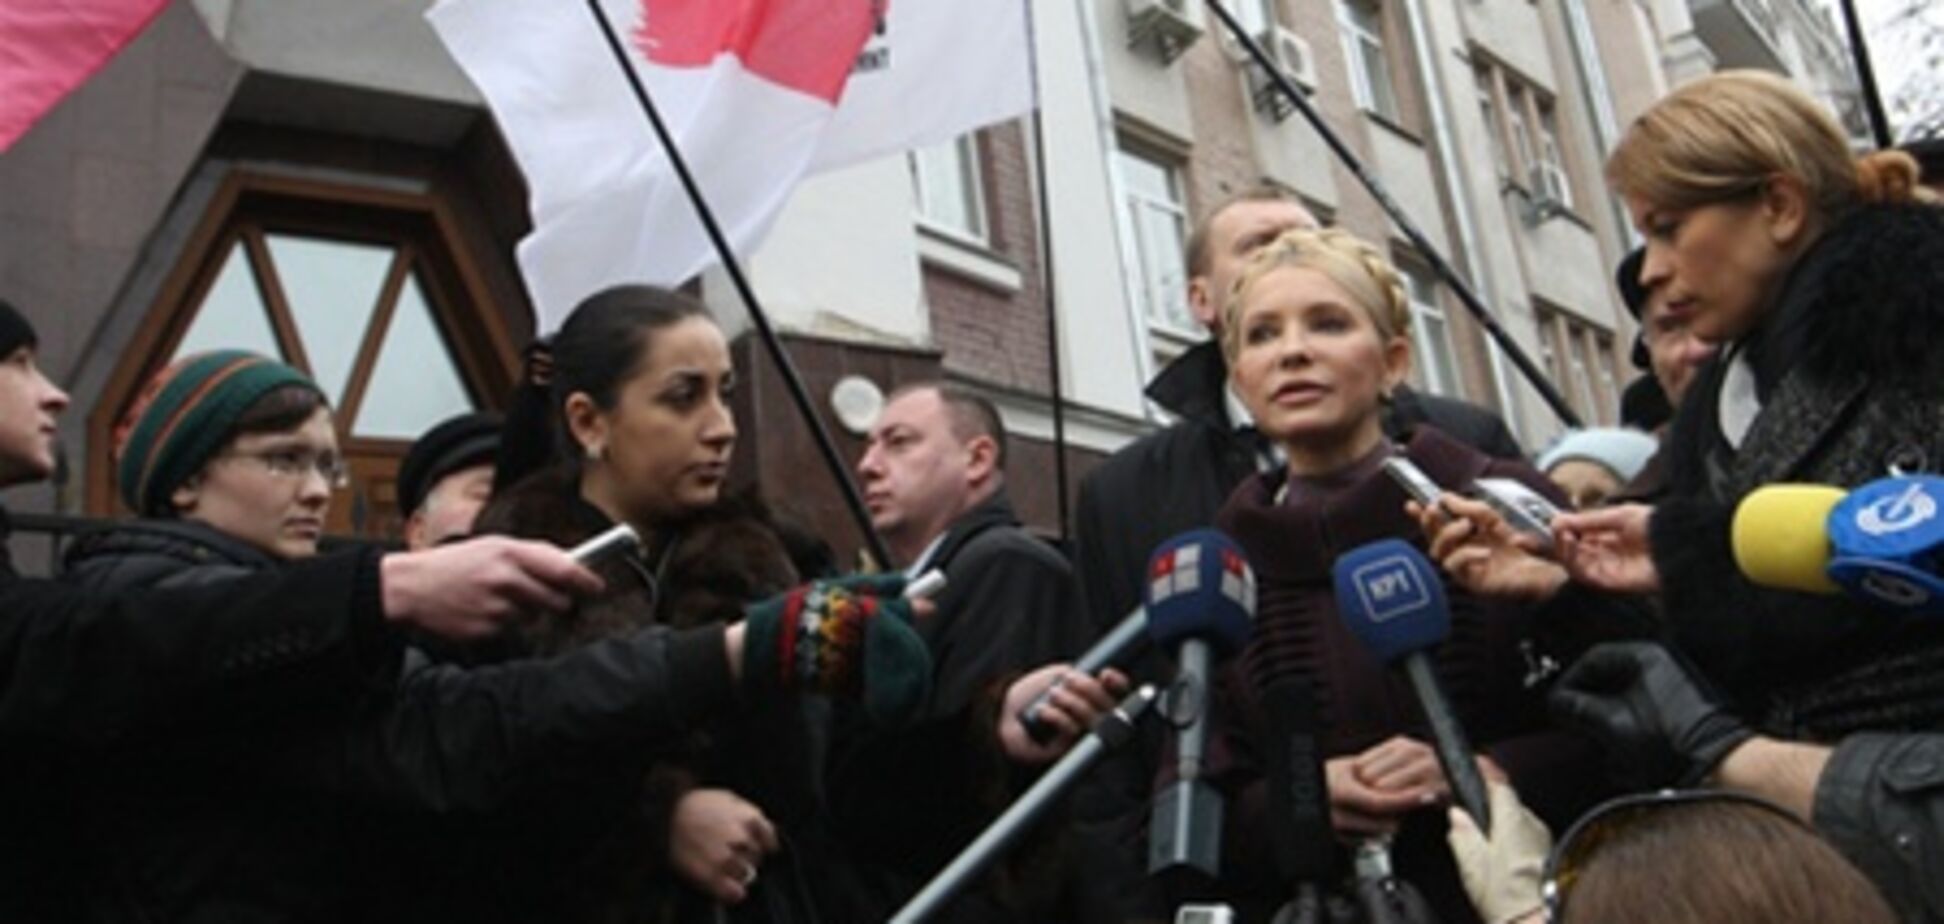 Тимошенко: у ГПУ нет доказательств моей вины даже для продажных судов